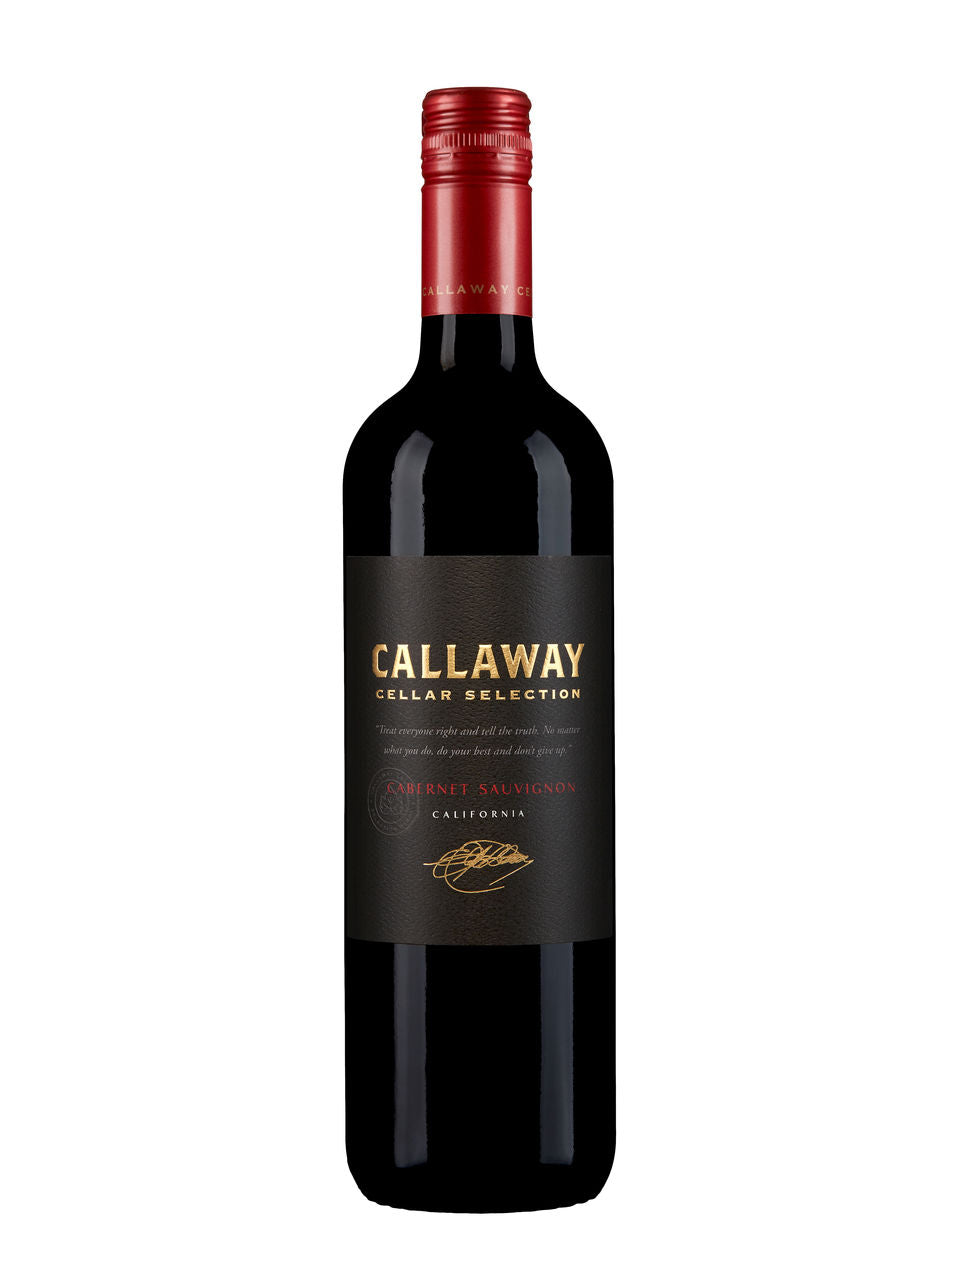 Callaway Cellar Selection Cabernet Sauvignon 750 ml bottle